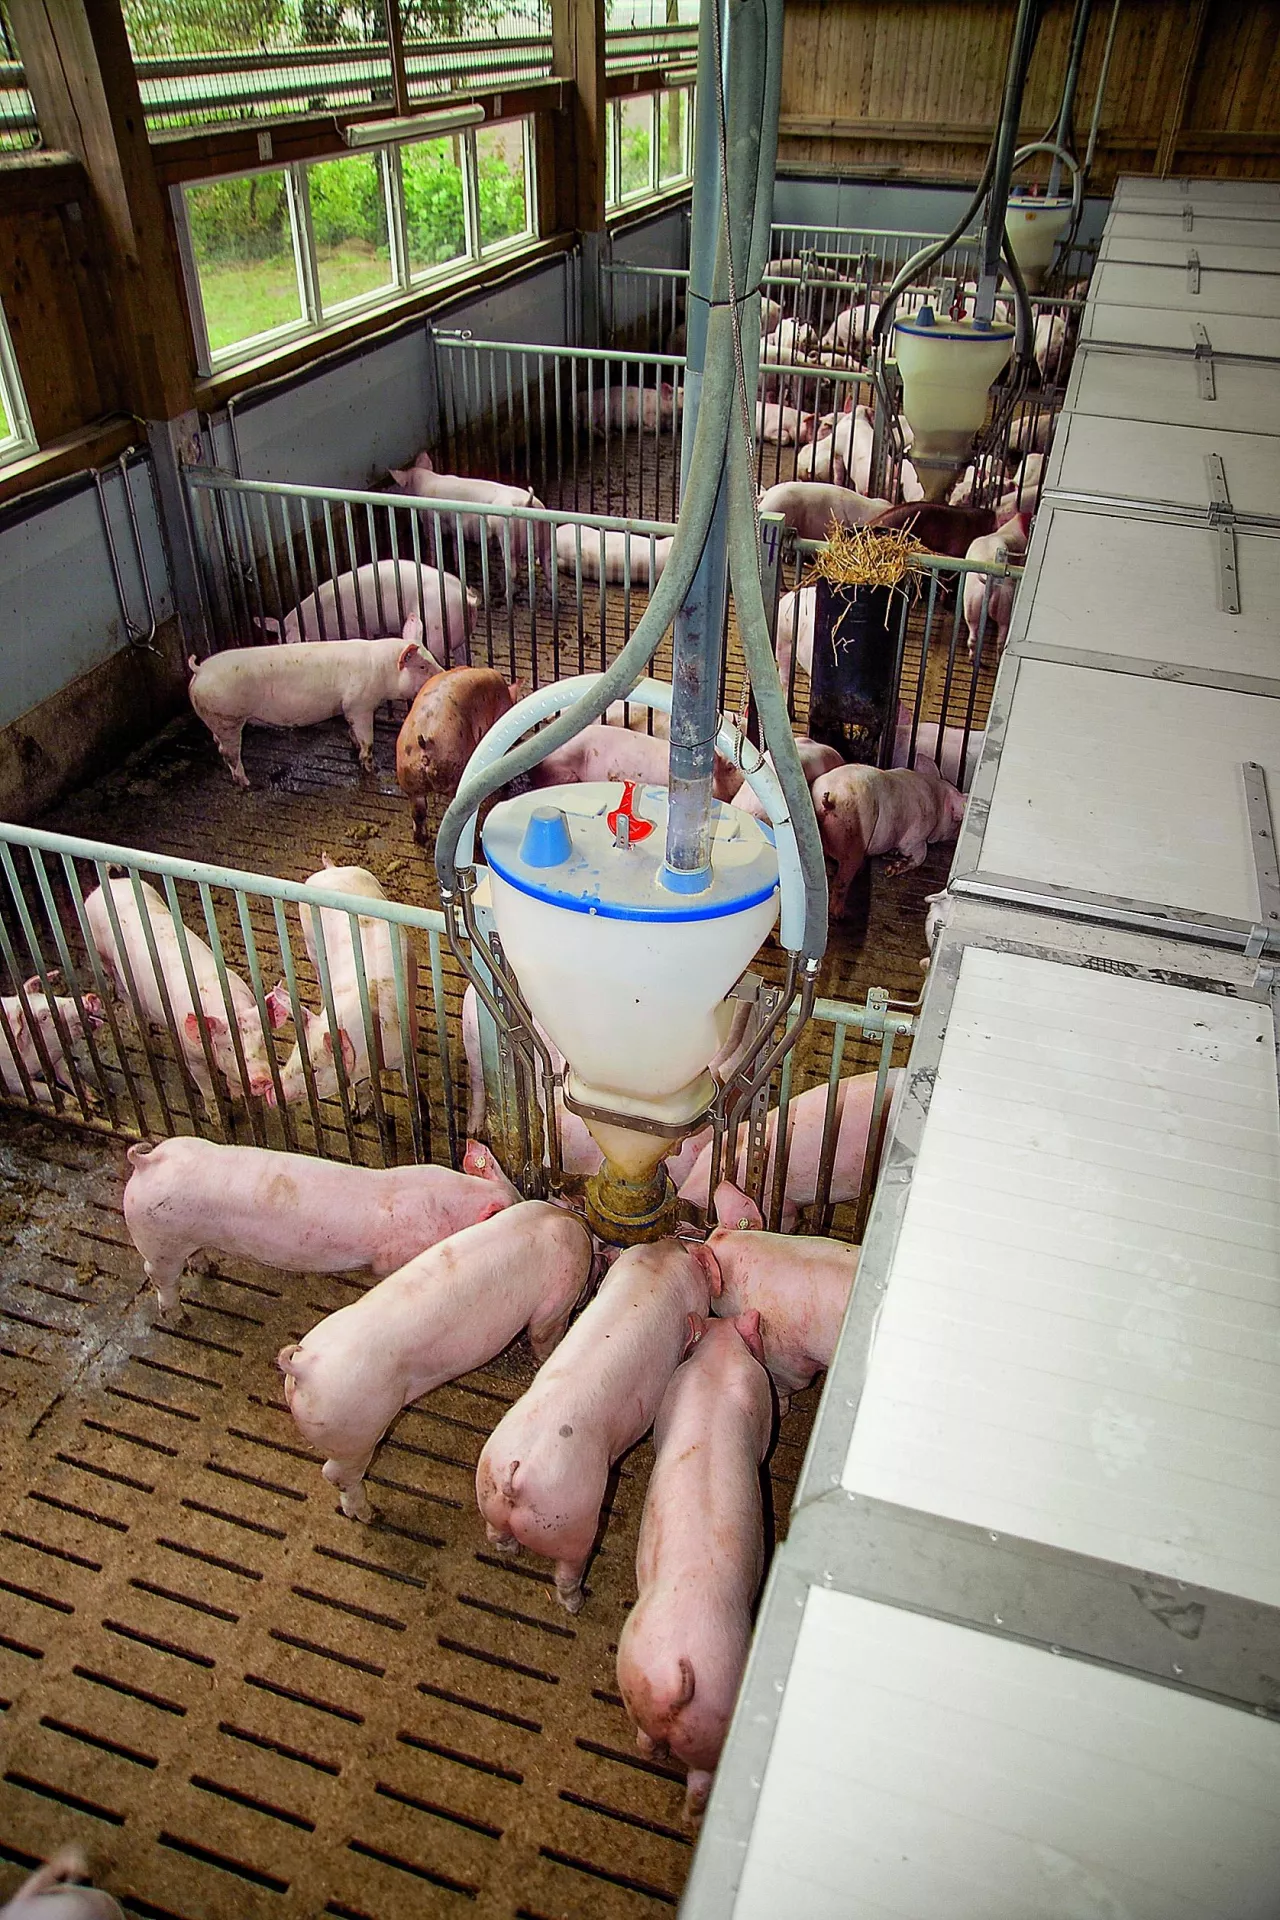 Ustawa o dobrostanie zwierząt może przewidywać większe wymagania dotyczące przestrzeni dla kurtyzowanych świń.